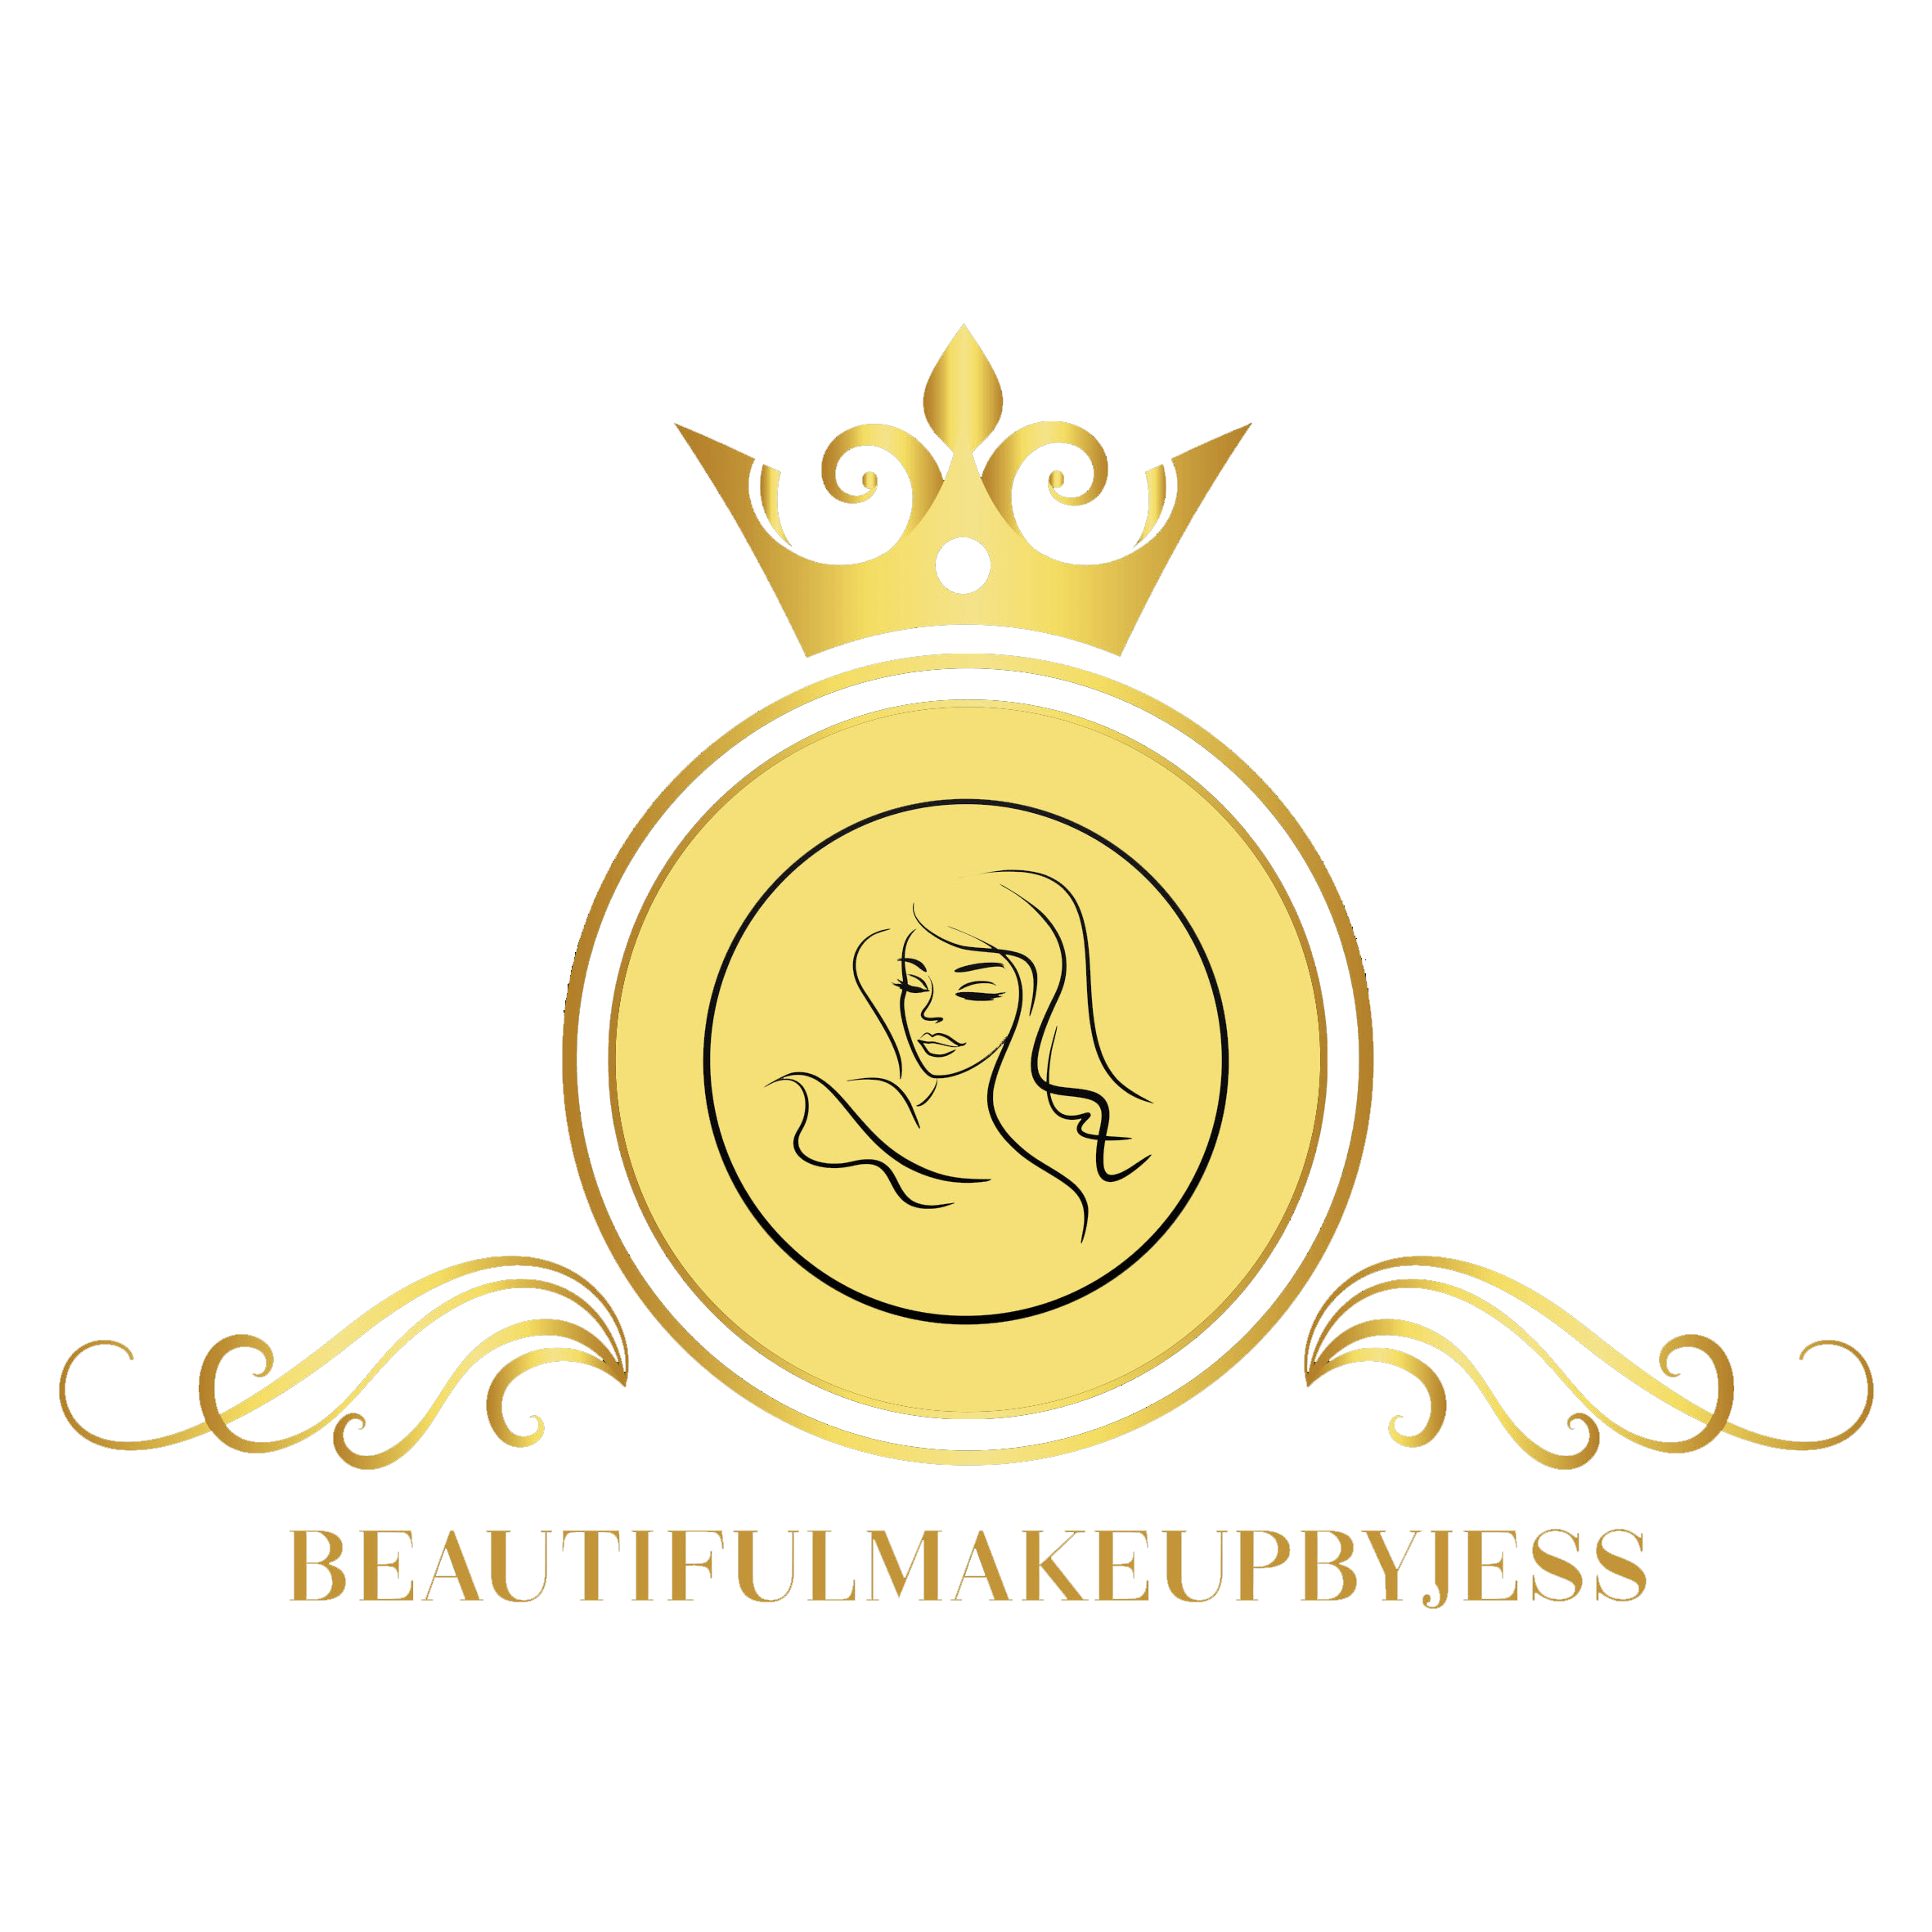 logo beautiful makeup by jess 1